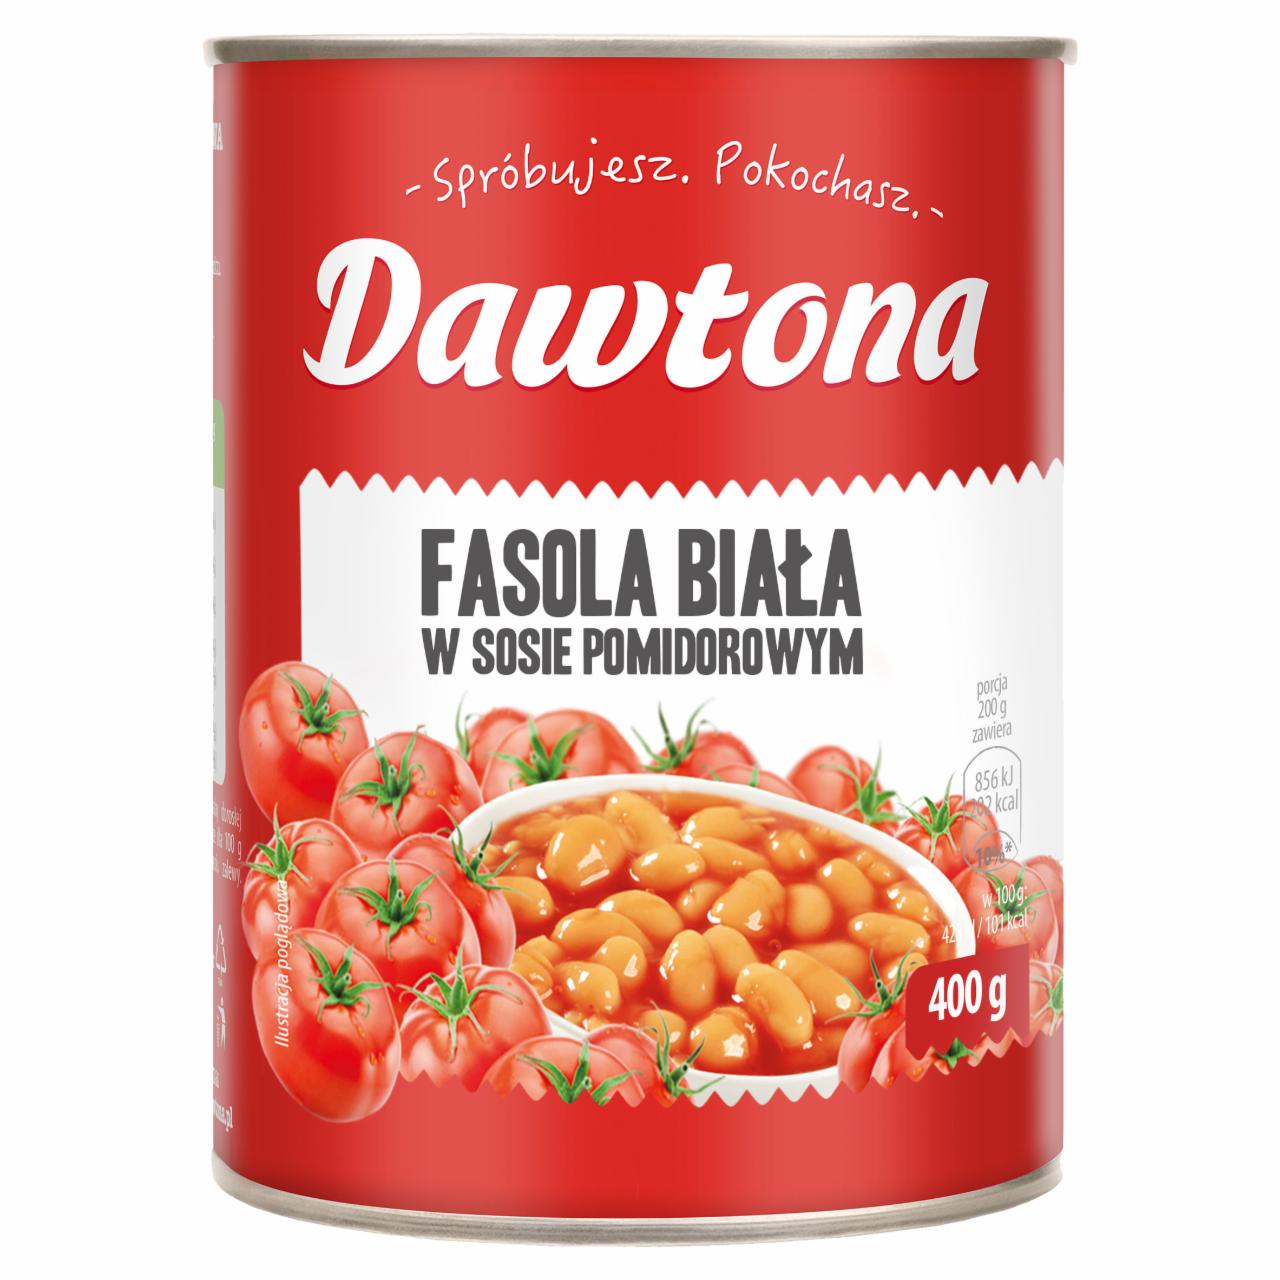 Zdjęcia - Dawtona Fasola biała w sosie pomidorowym 400 g